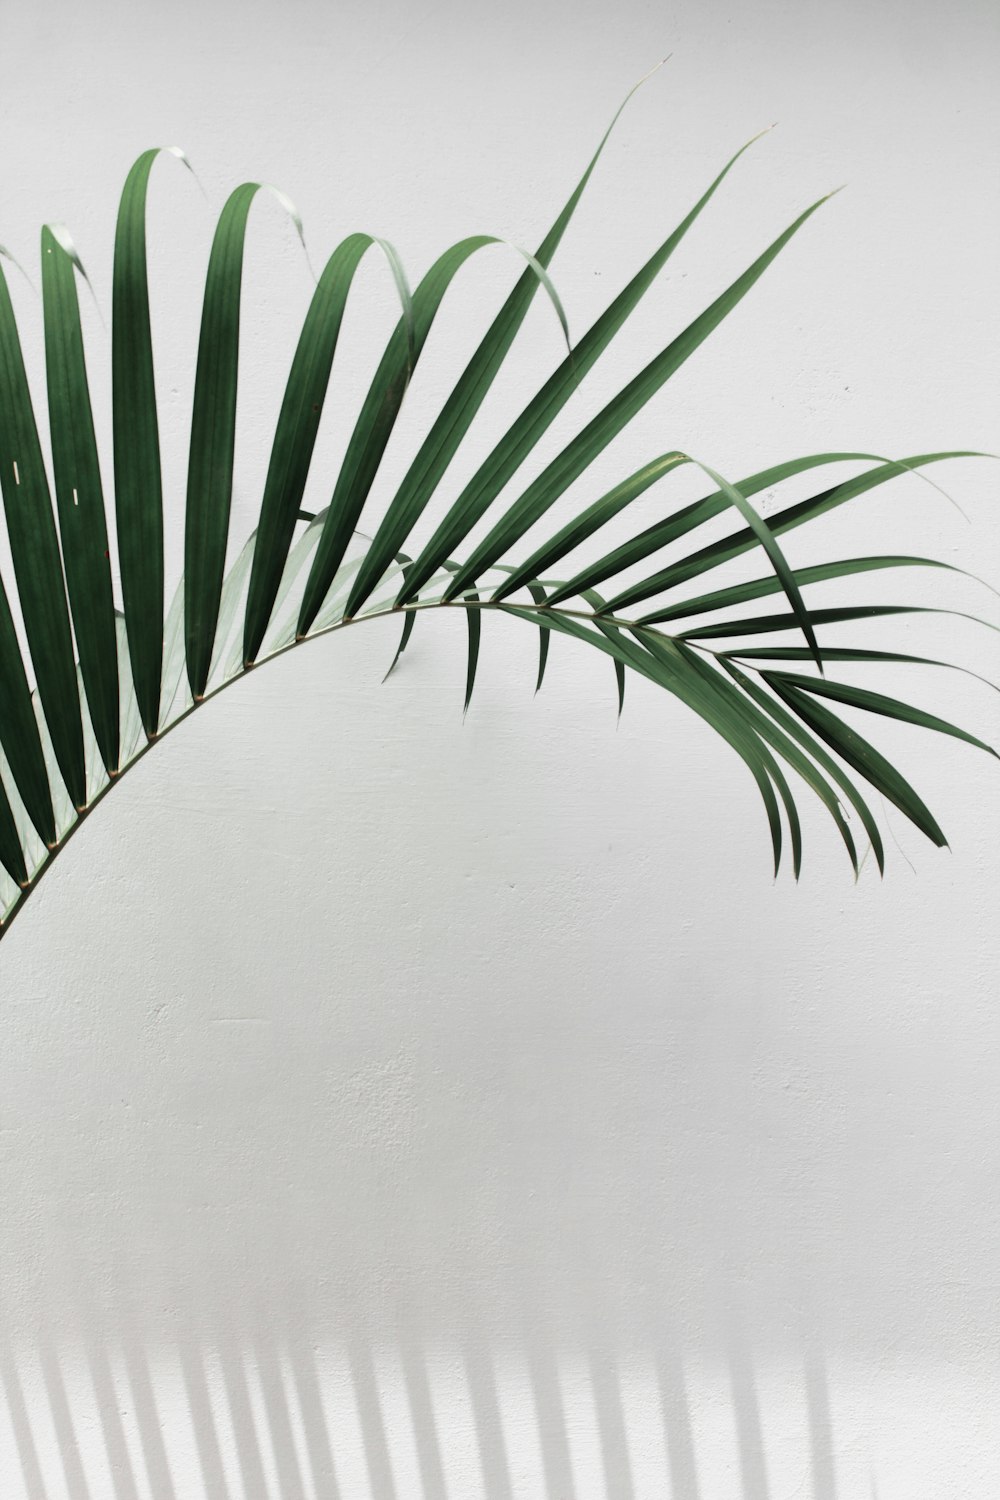 Planta de palmera verde junto a la pared blanca